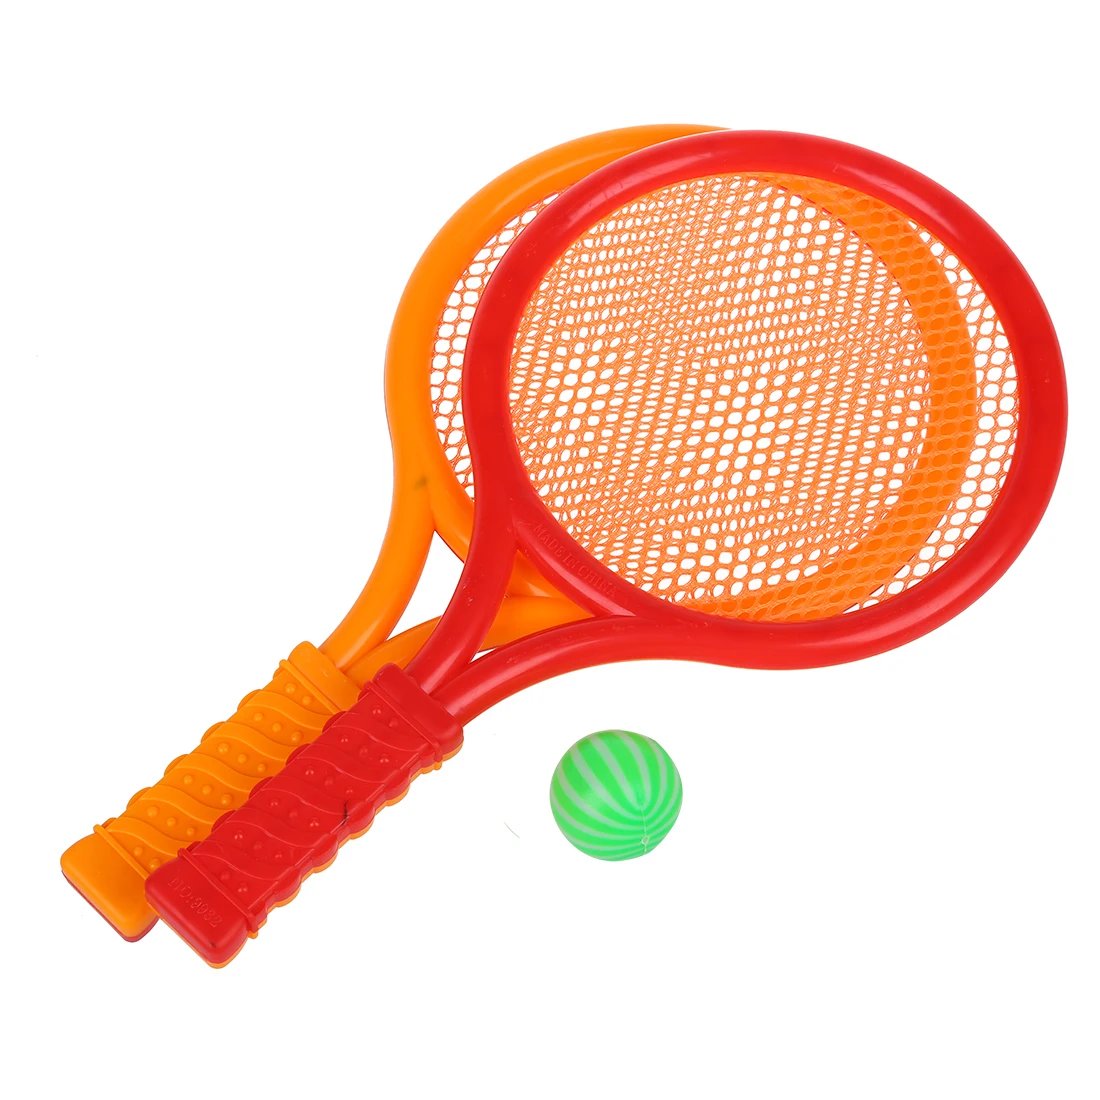 Игра для детей Оранжевый Красный пластиковый, Теннисный игрушечные ракетки для бадминтона набор - Цвет: Red orange